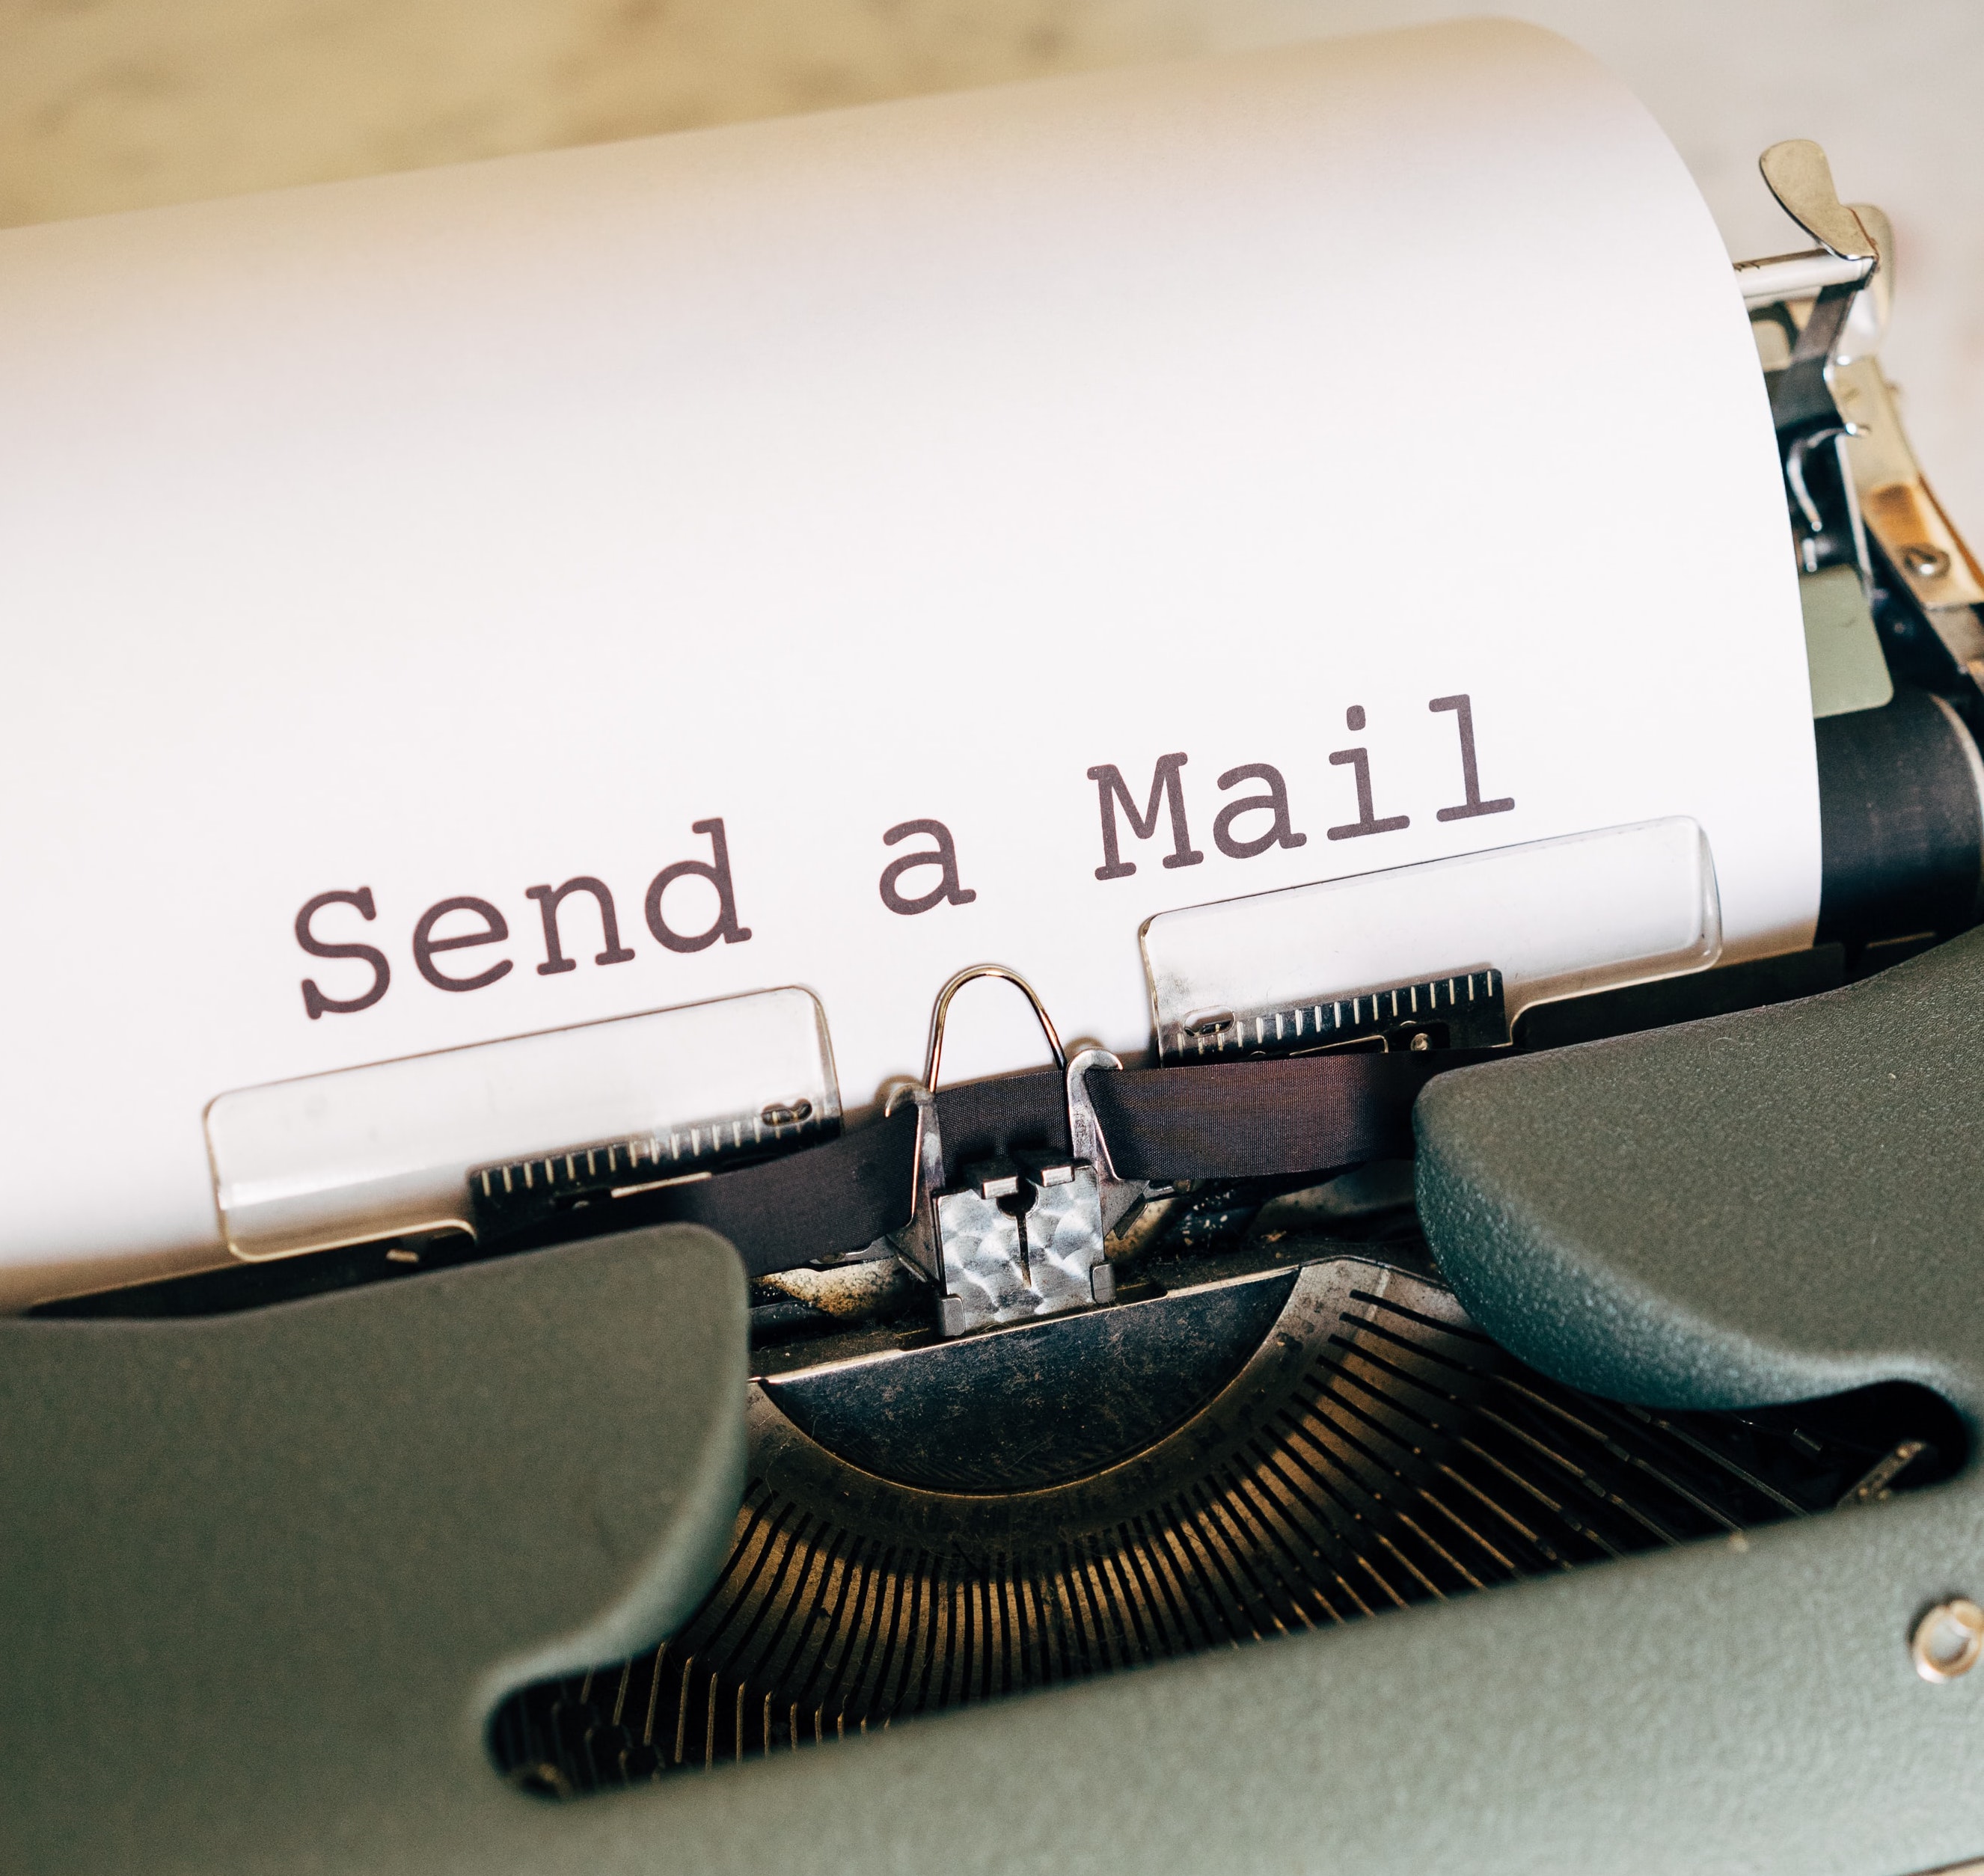 machine à ecrire avec une feuille de papier sur laquelle il est écrit "send a mail"